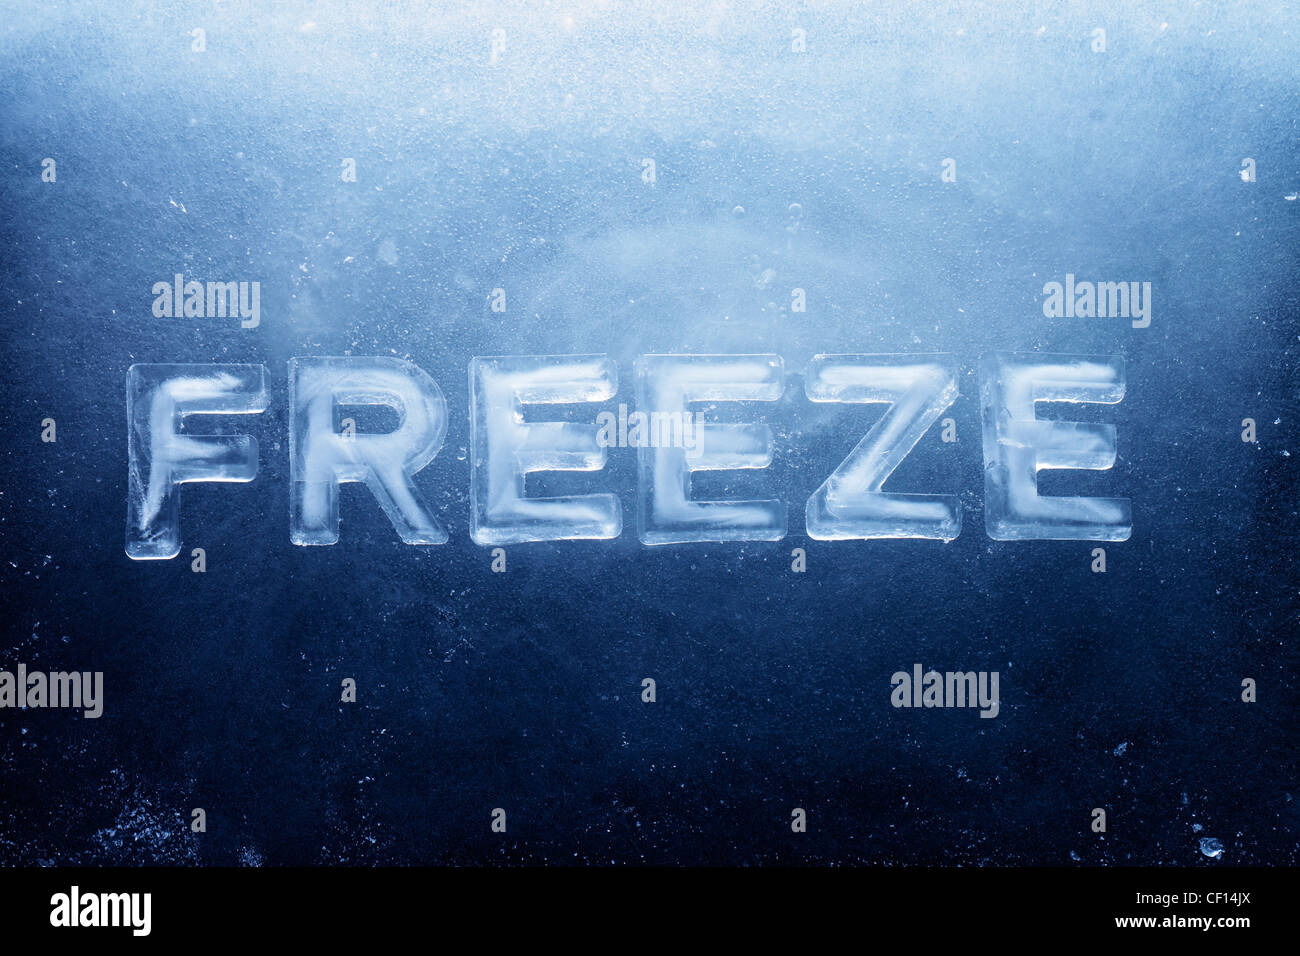 Einfrieren, Wort, Buchstaben von echtem Eis gemacht. Stockfoto